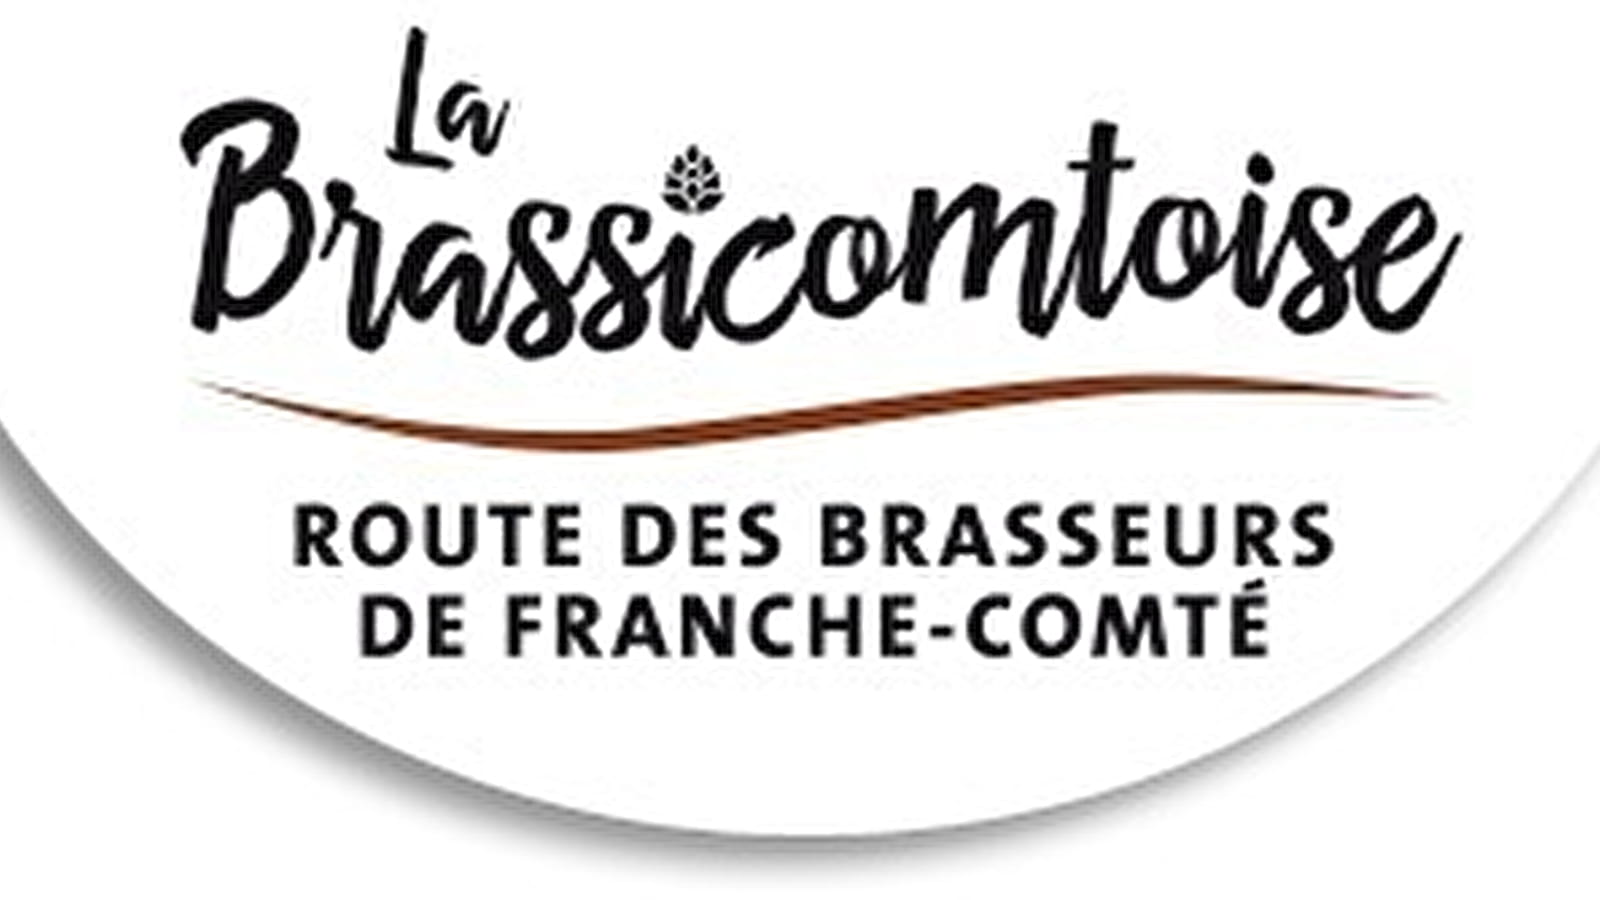 La Brassicomtoise : route des brasseurs de Franche-Comté